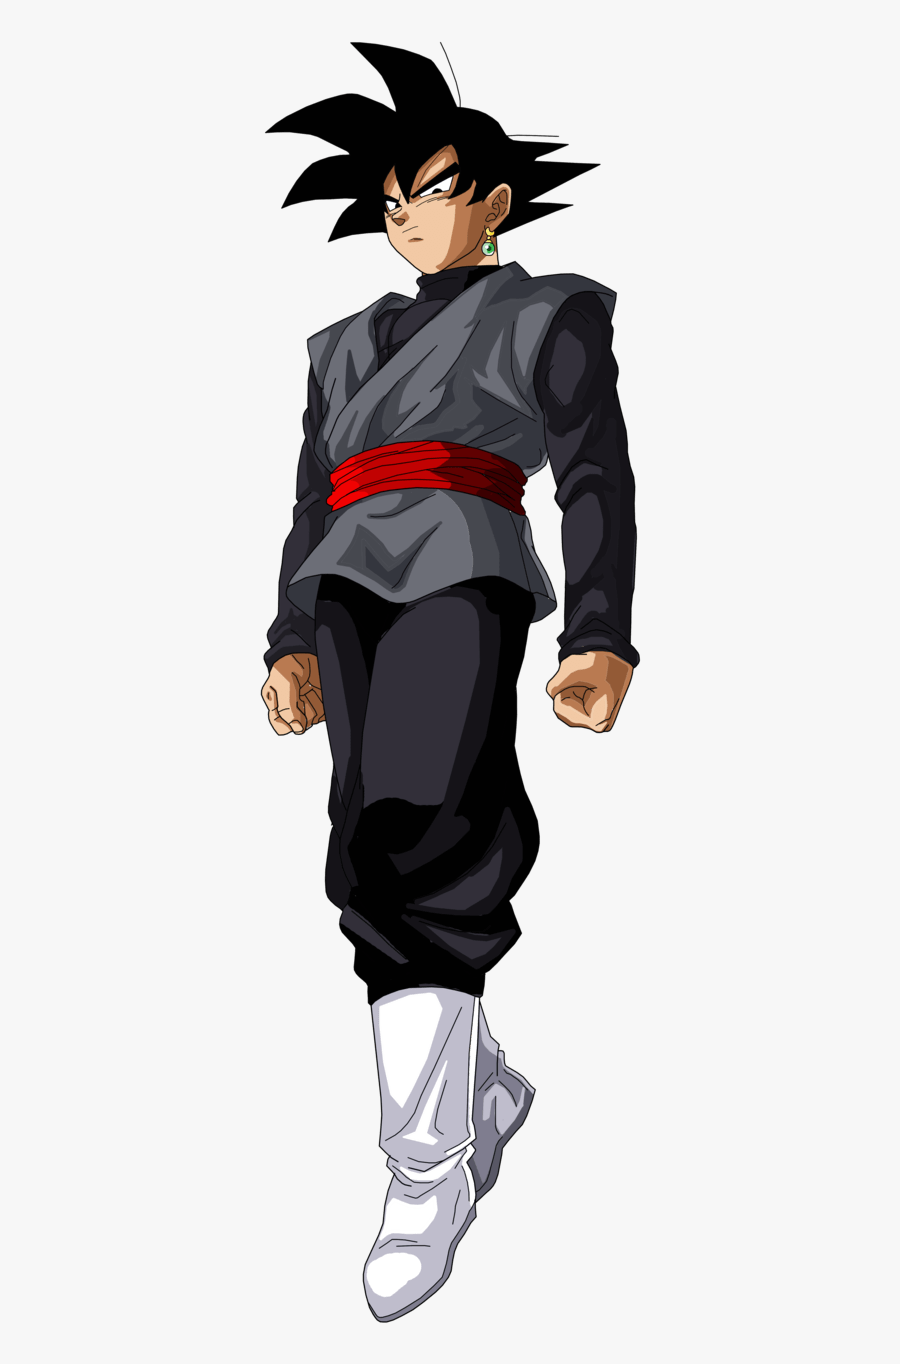 Black Goku Standing - Goku Black Png, Transparent Clipart